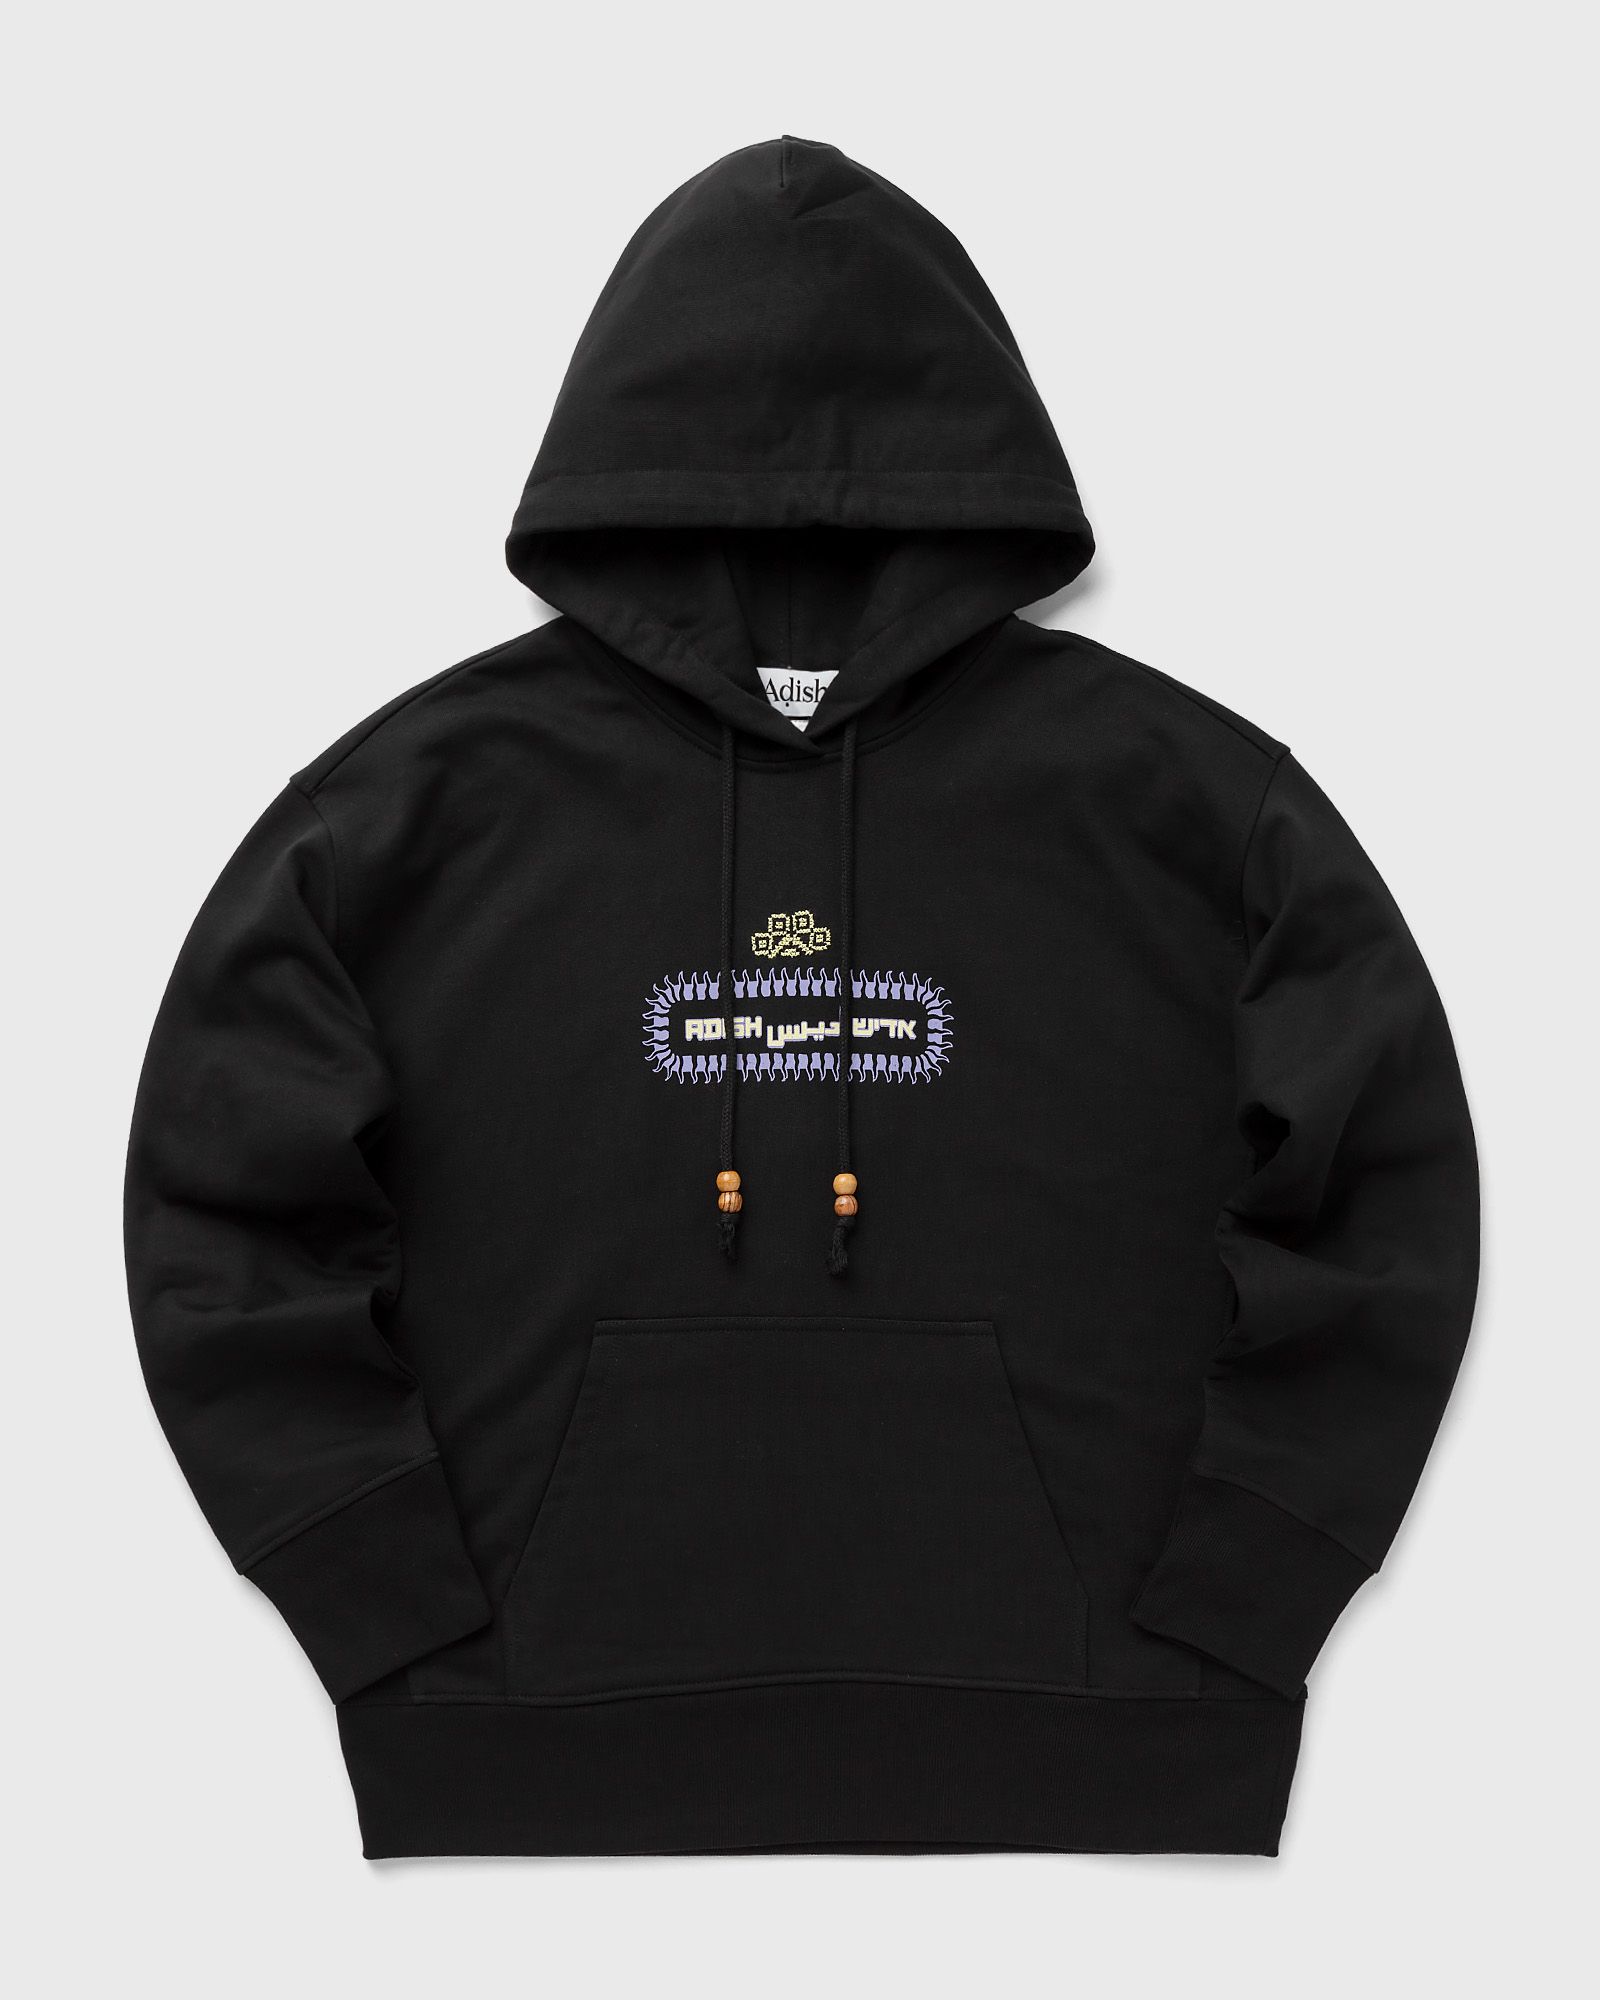 ADISH - alkhws logo hoodie sweatshirt men hoodies black in größe:xxl